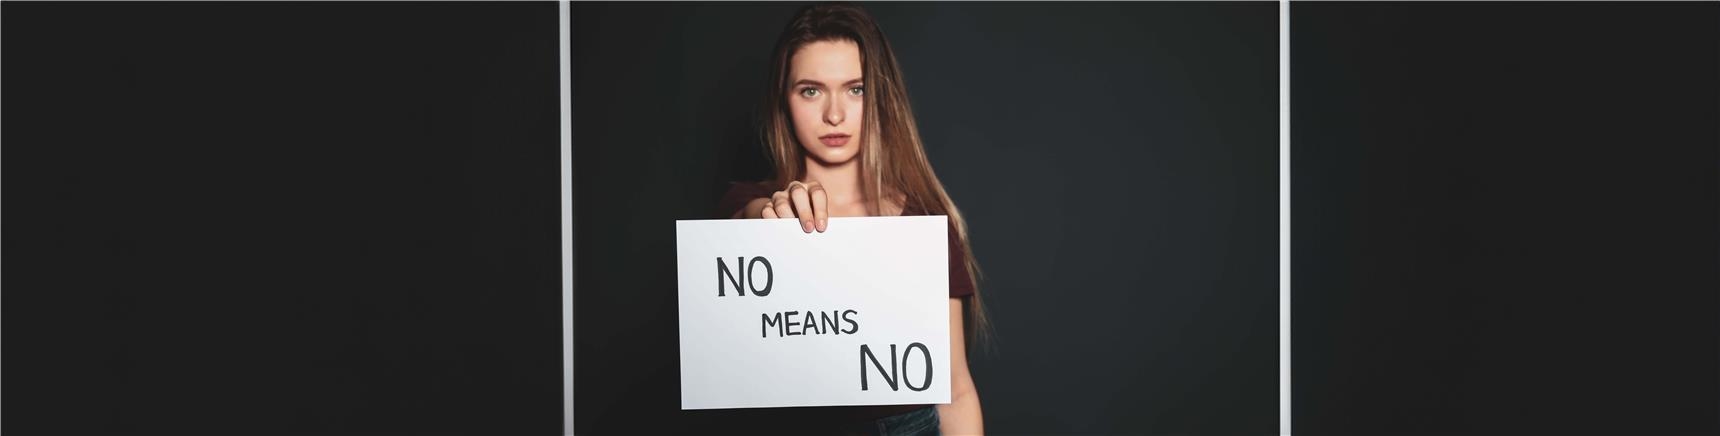 Gewalt gegen Frauen - Nein heißt nein